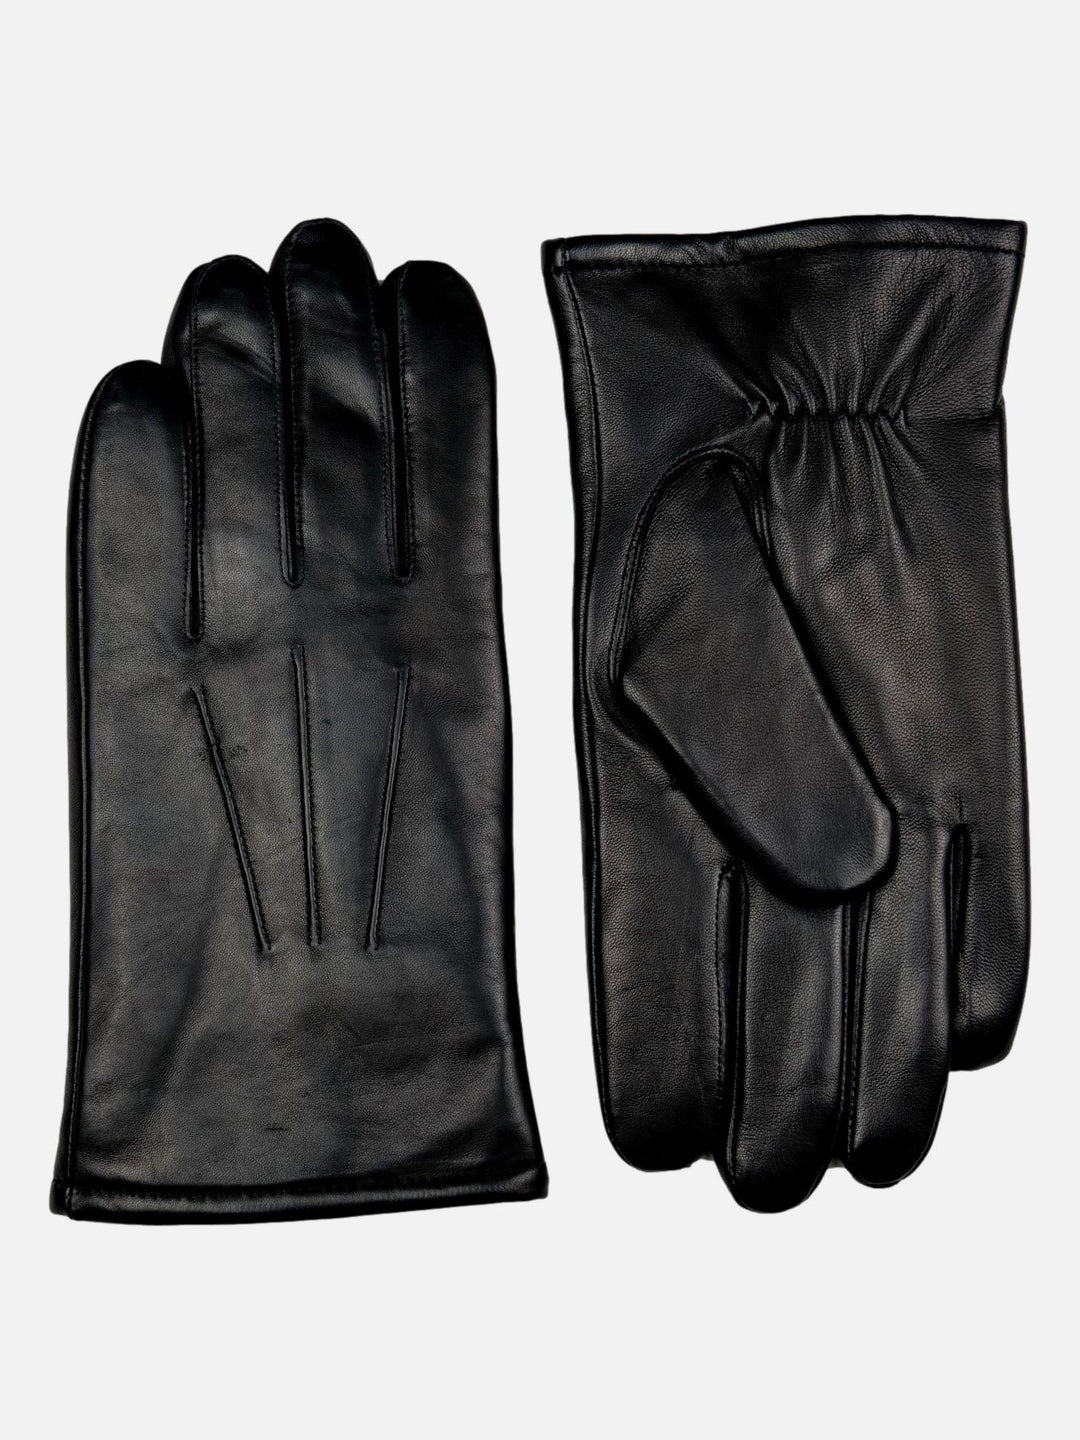 123-M Gloves - Sheep Leather gloves - Men - Black